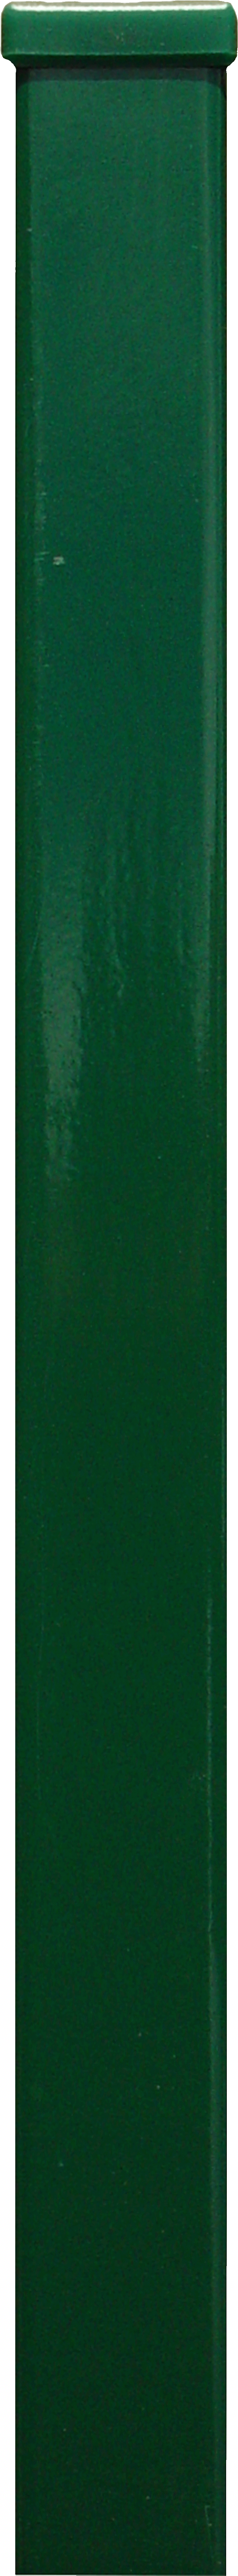 HANSEATISCHER DRAHTHANDEL GMBH Rechteckrohrpfosten vz/grün 60x40x1750 mont Kappe